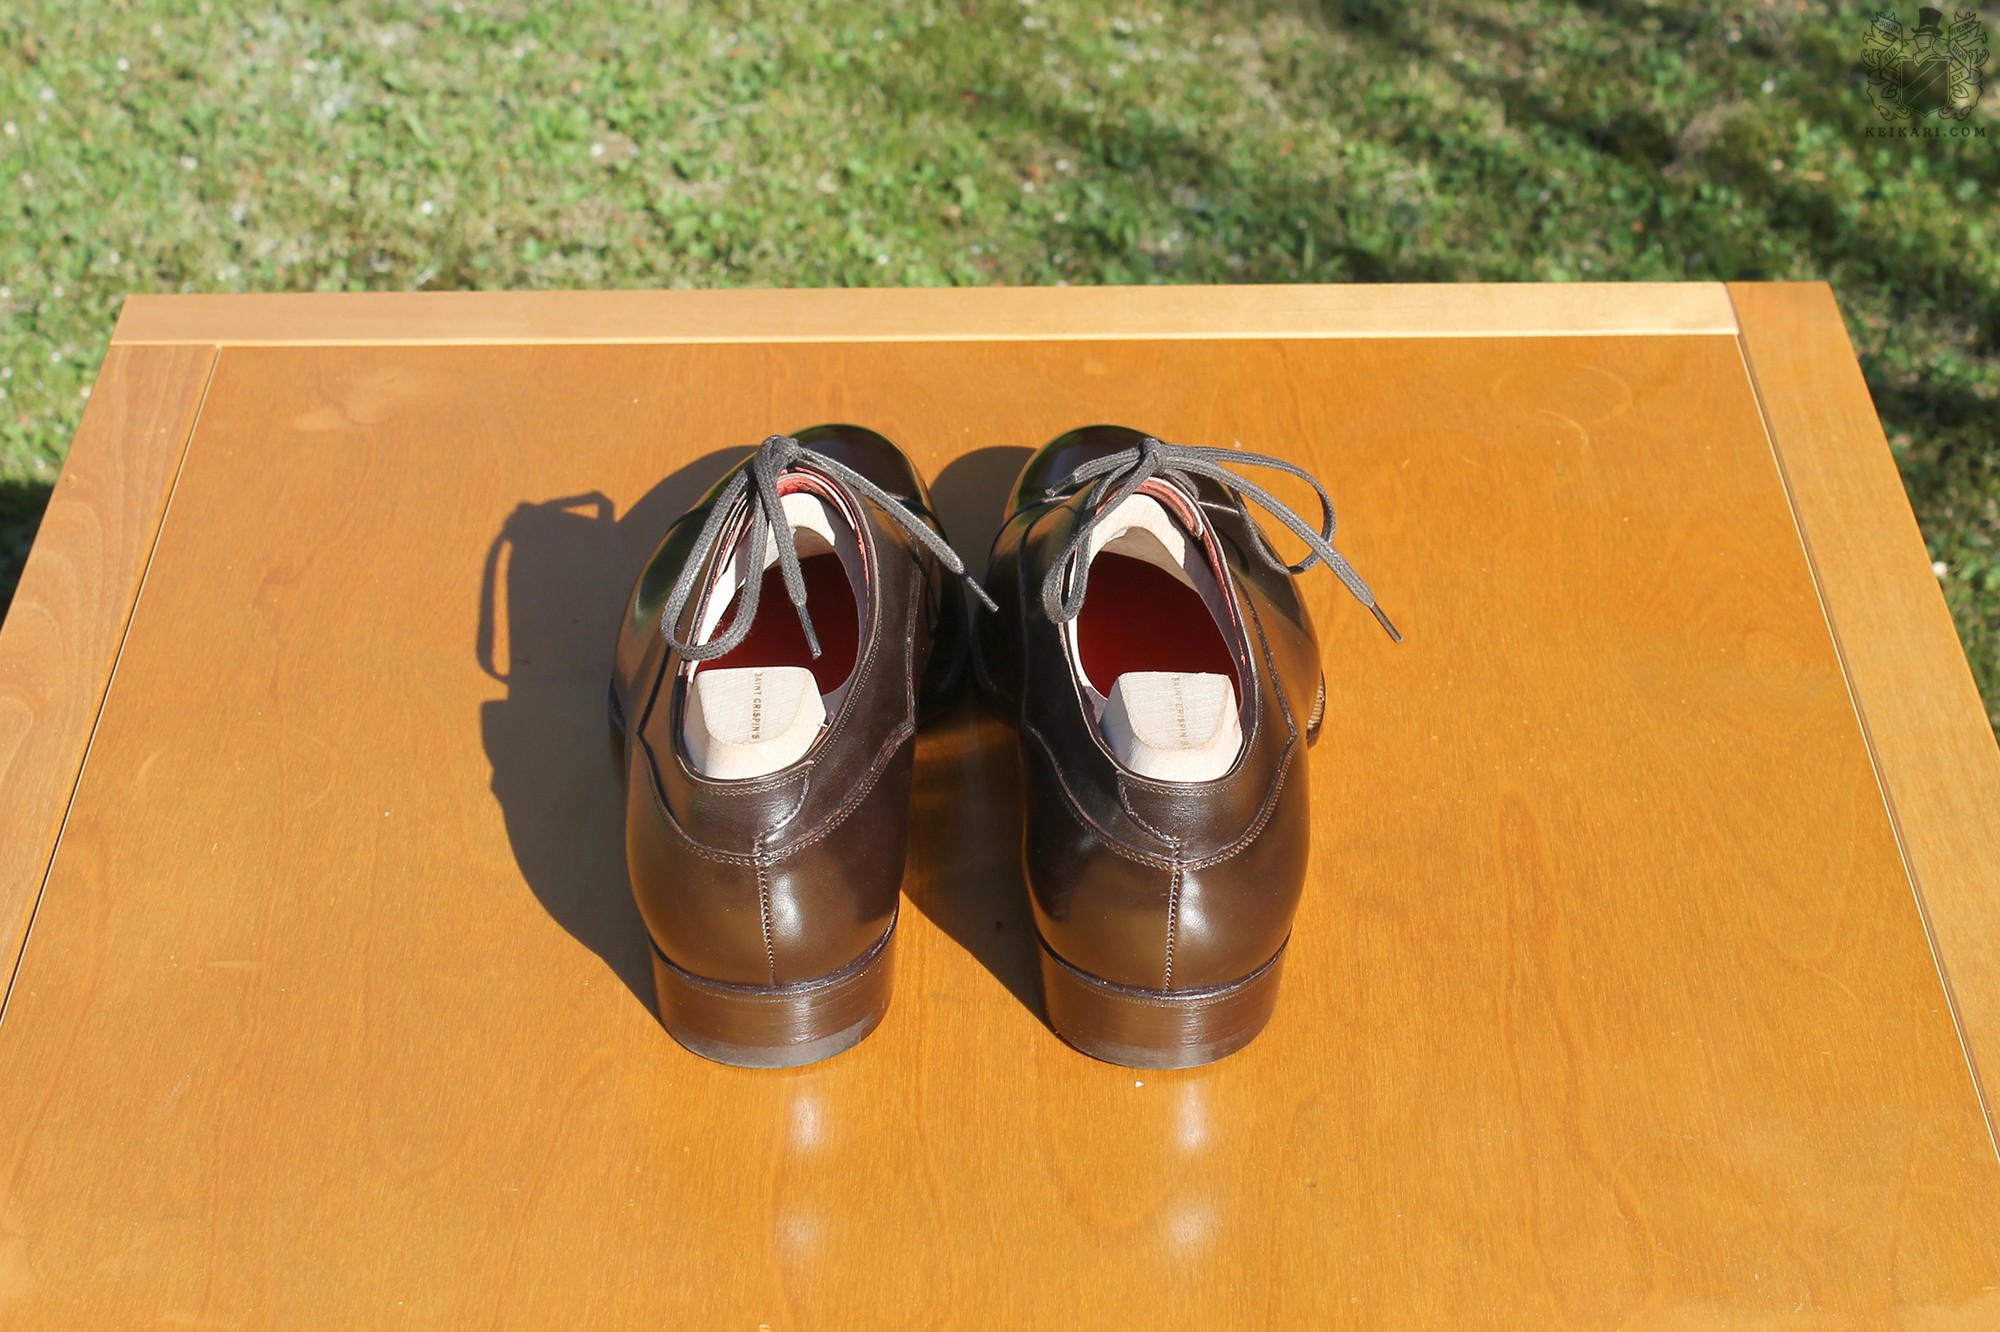 Anatomy_of_Saint_Crispin's_shoes_at_Keikari_dot_com04